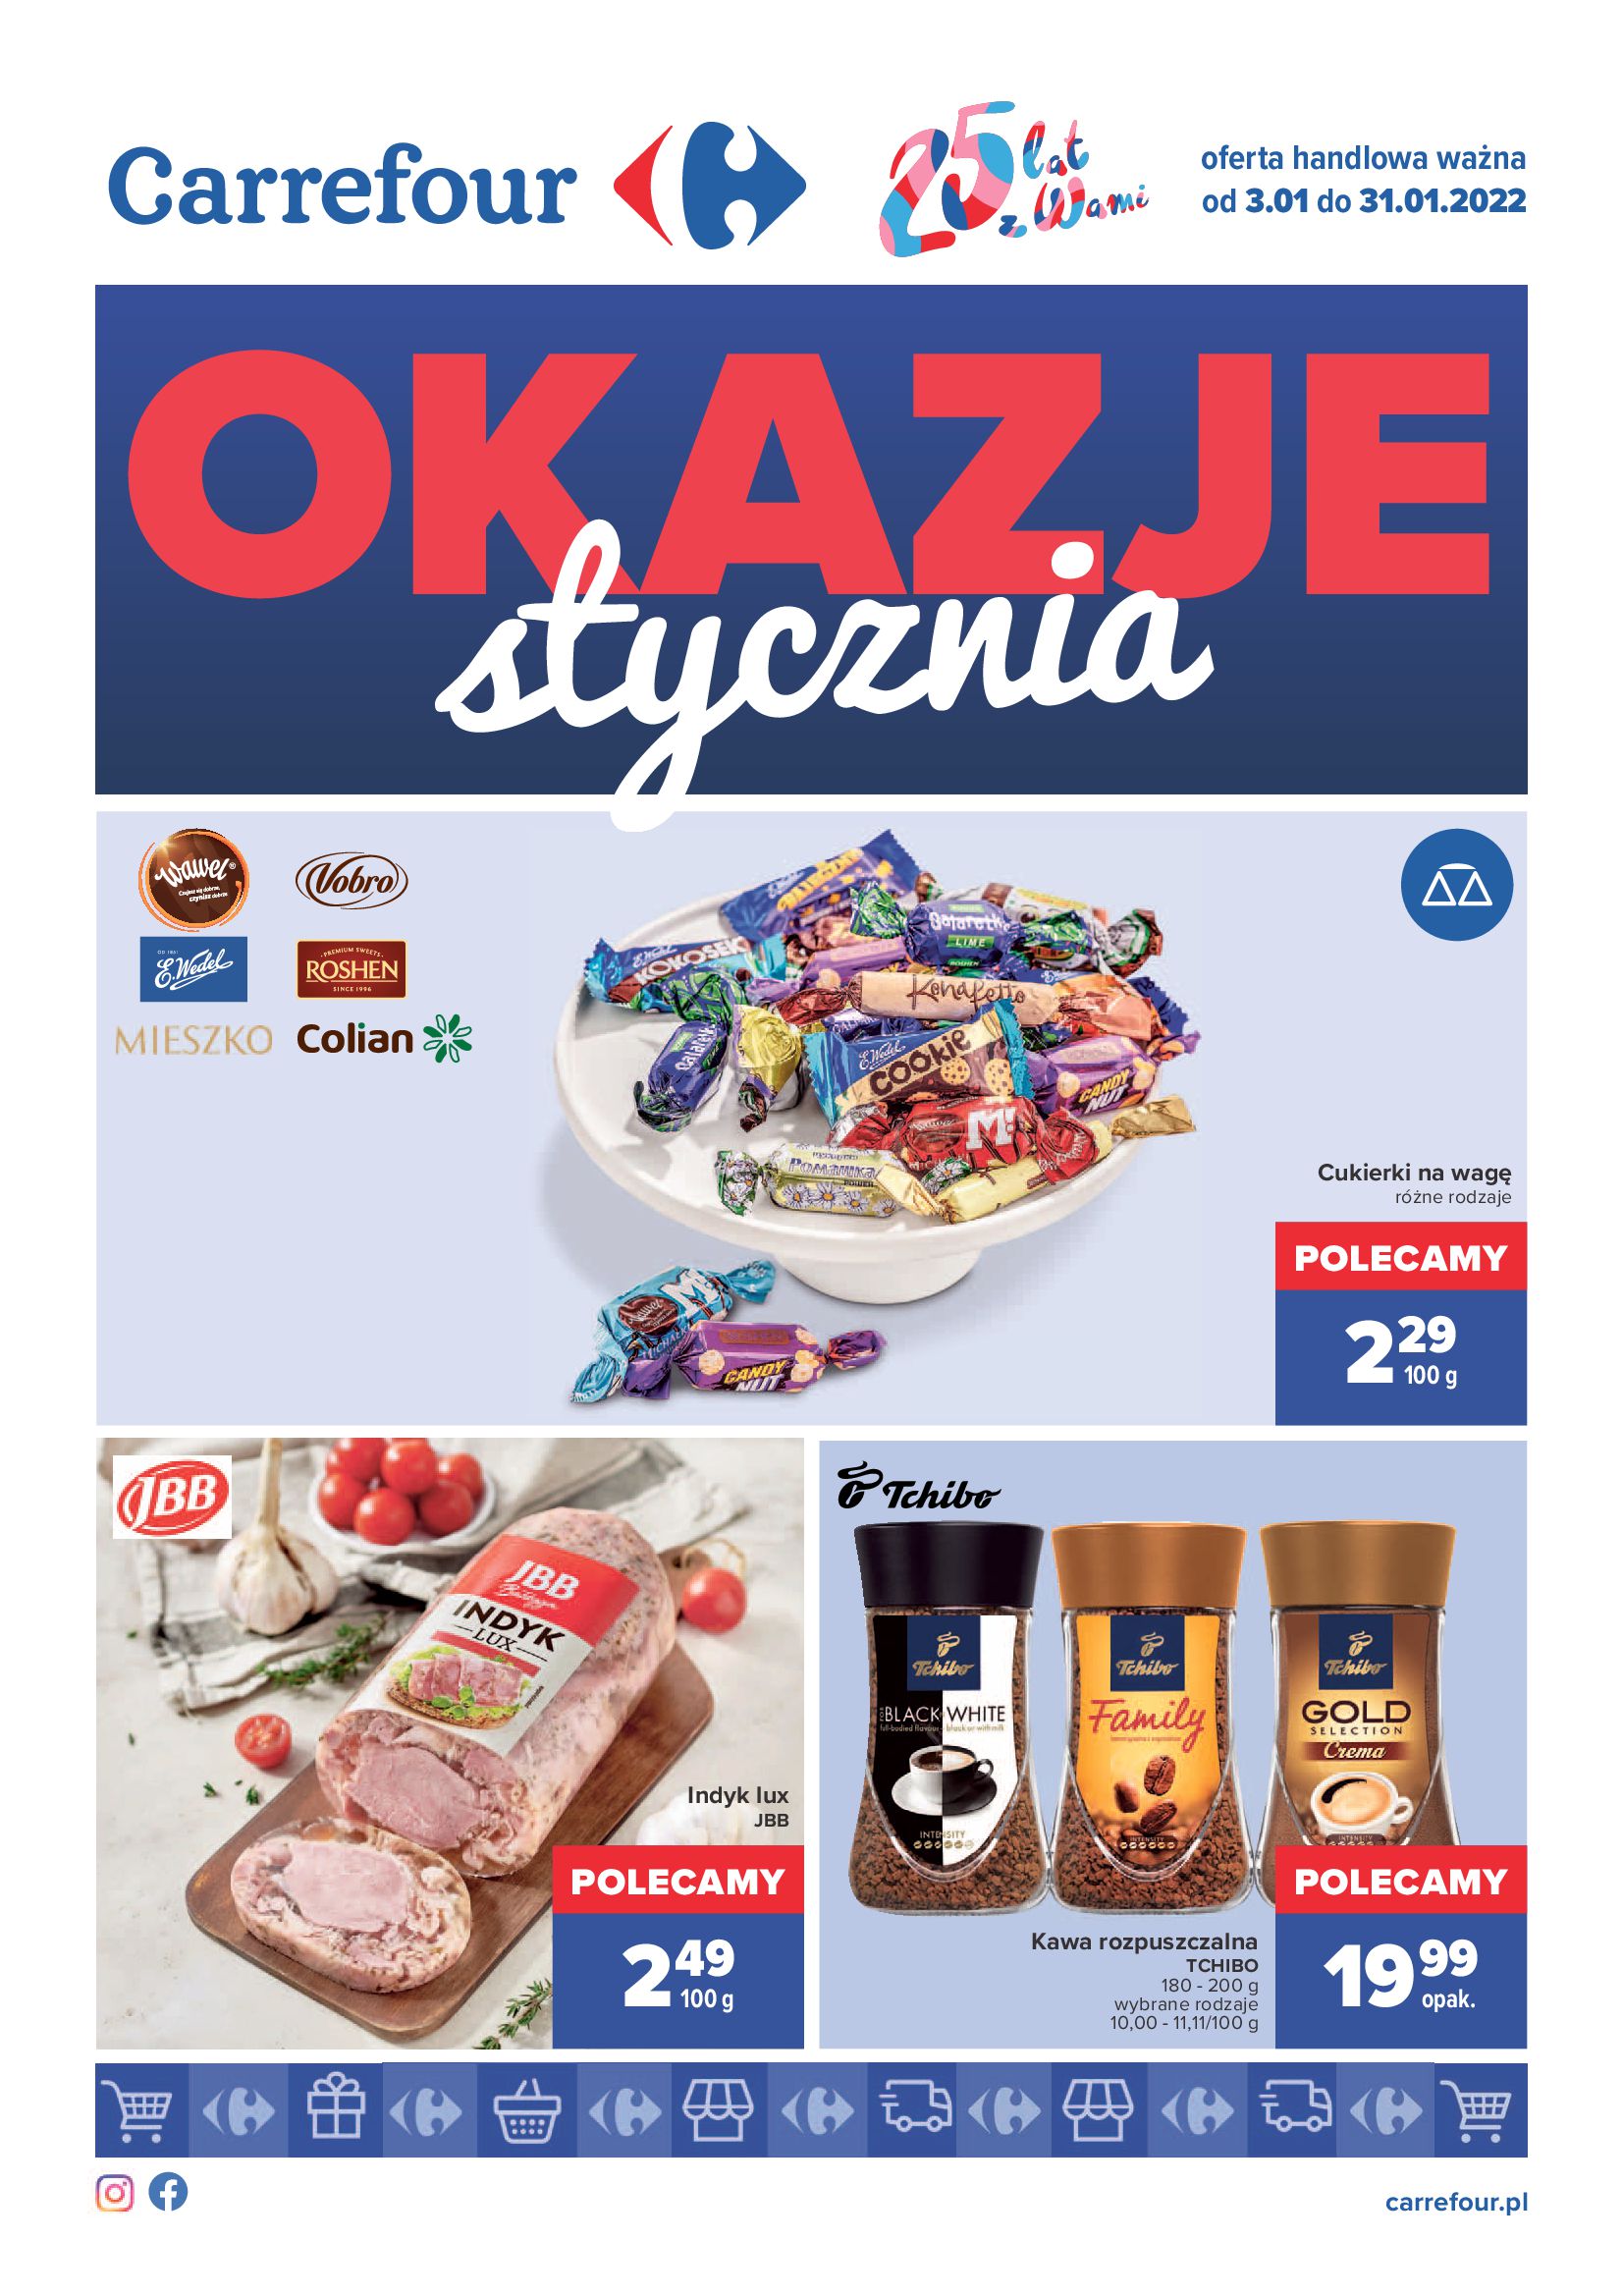 Gazetka Carrefour: Gazetka Carrefour - Okazje Stycznia od 03.01 2022-01-03 page-1